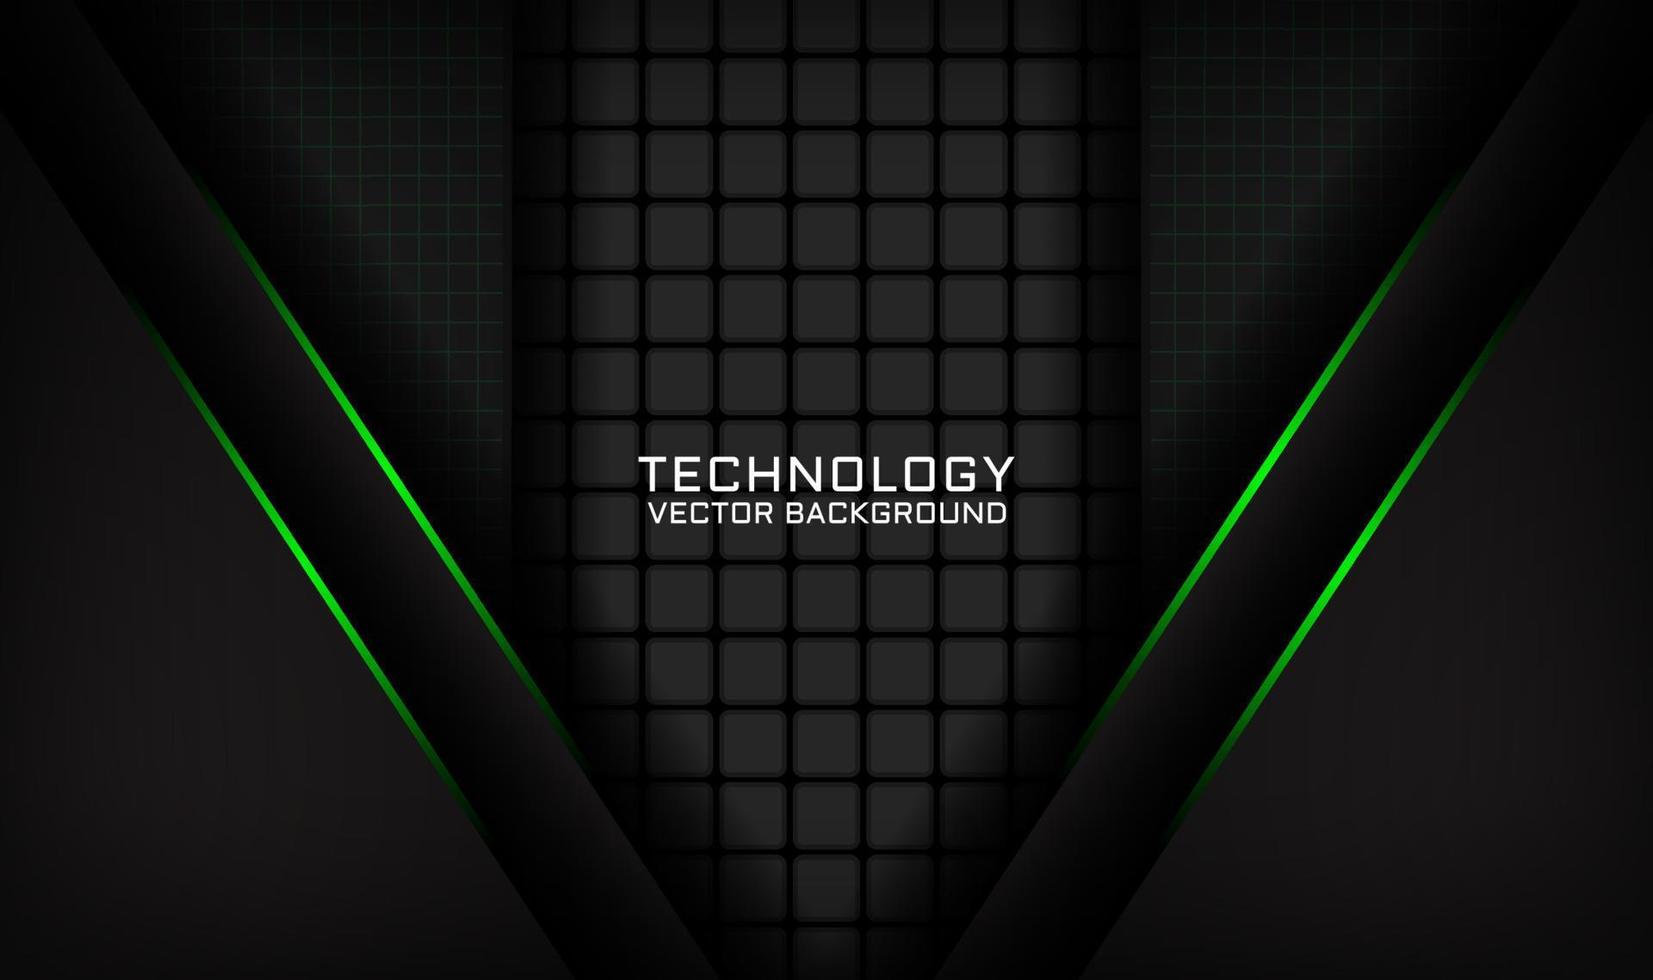 3D svart teknik abstrakt bakgrund överlappande lager på mörkt utrymme med grön ljus linje effekt dekoration. grafiskt designelement framtida stilkoncept för banner, flygblad, kort, omslag eller målsida vektor